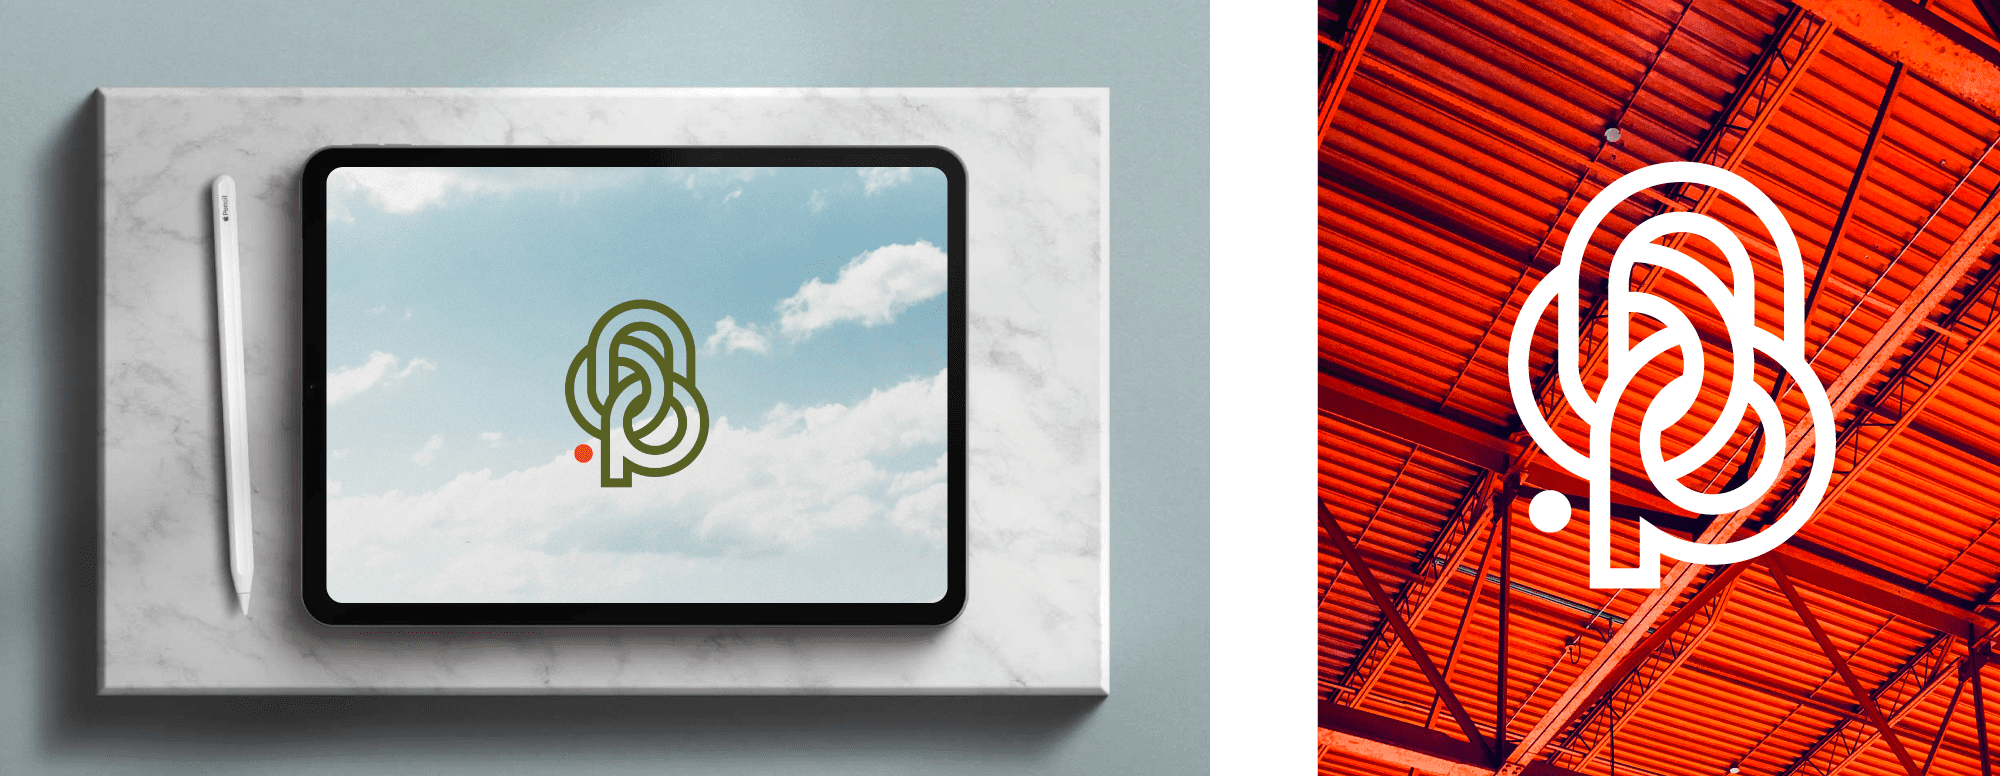 Mise en situation du logo à travers un mock-up de tablette numérique présentant le logotype en couleur sur fond photographique de nuage et à travers une superposition du logo blanc sur photographie de taule orange.